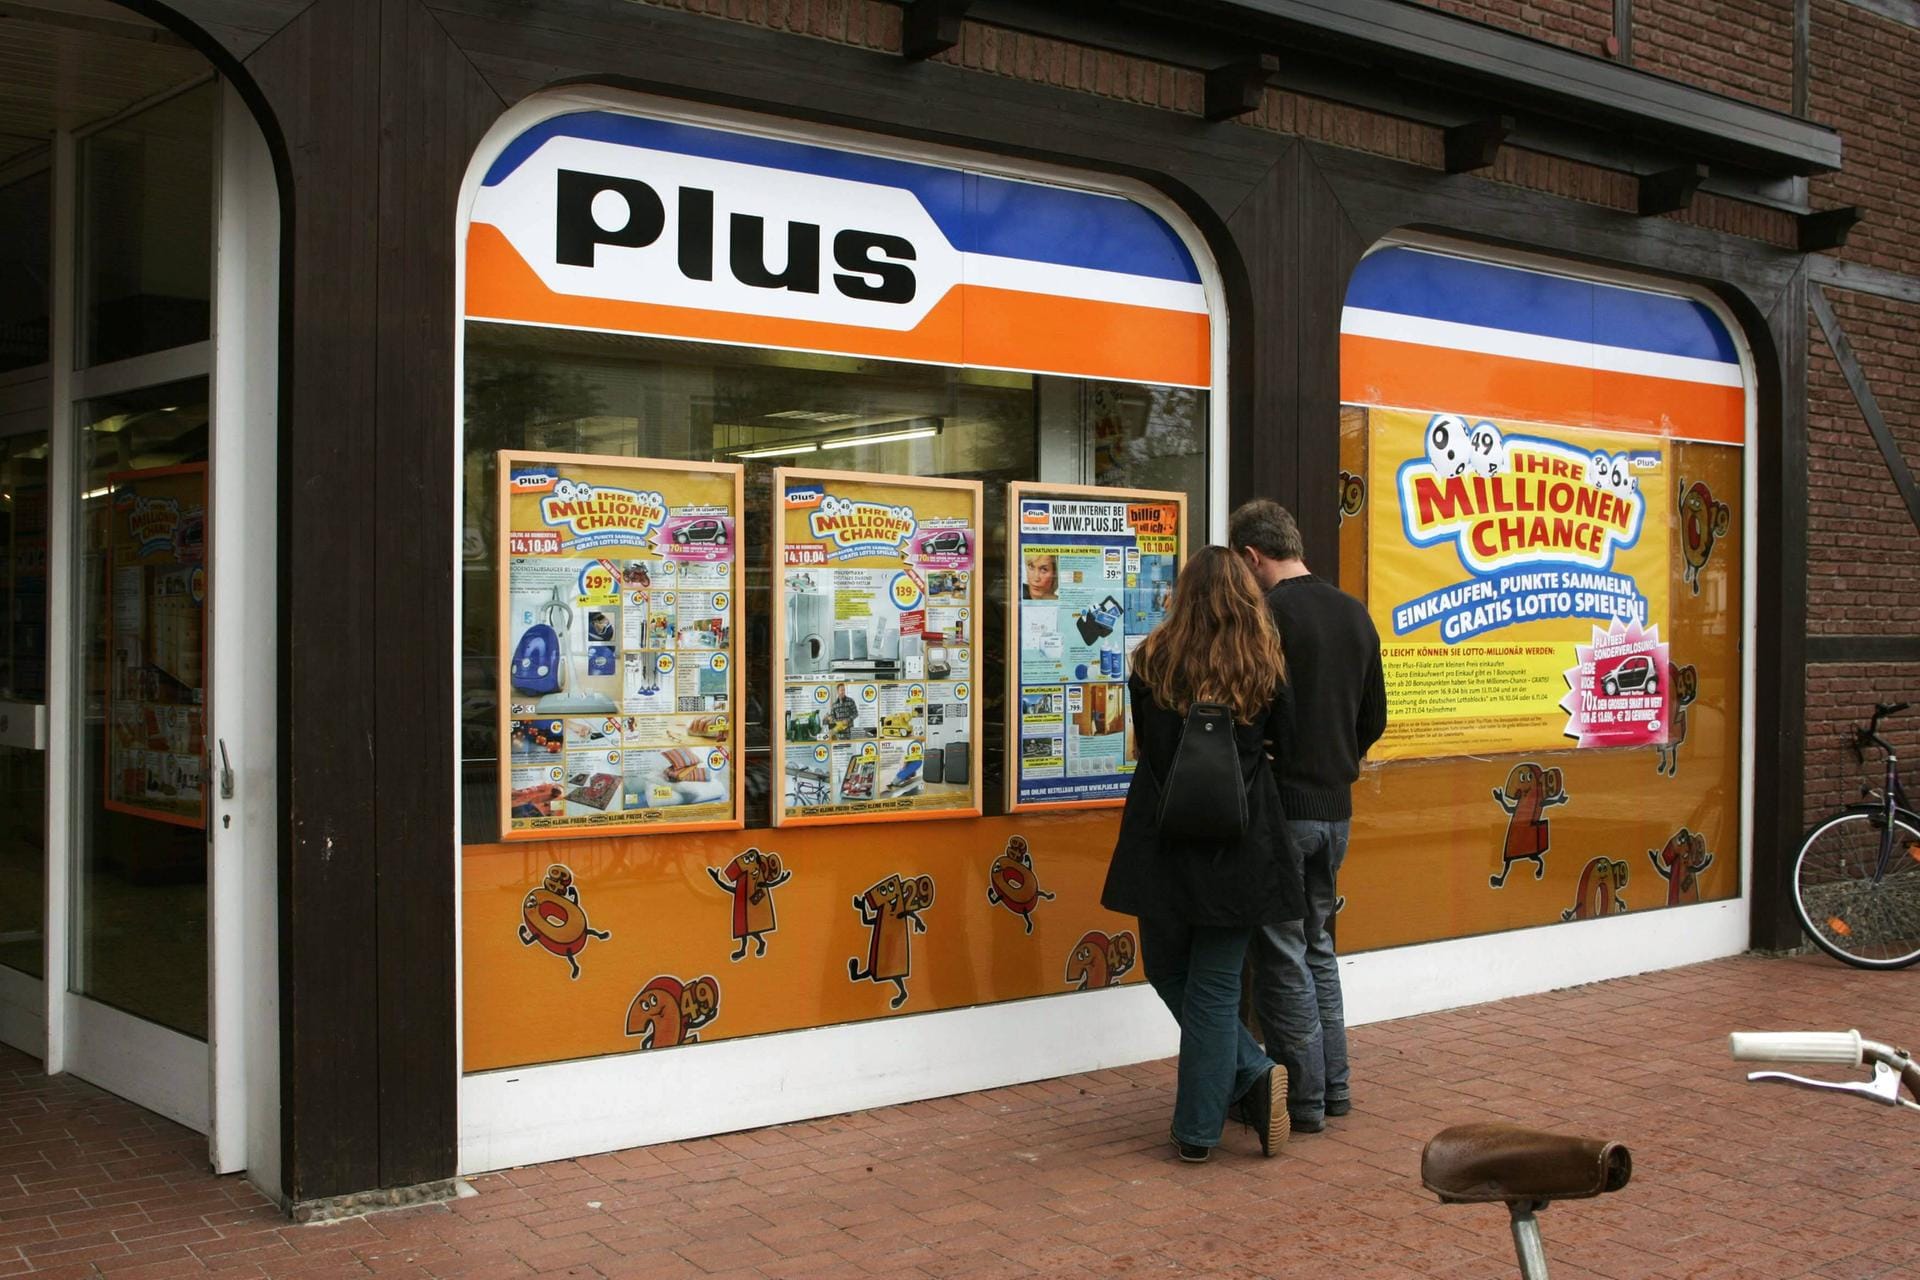 Passanten vor einem Plus-Laden in Cuxhaven im Jahr 2004: Die "Plus Warenhandelsgesellschaft" war eine Discounter-Kette des Tengelmann-Konzerns, die seit 1972 bestand. Anders als die Konkurrenz von Aldi, Lidl oder Norma gab es in den rund 2.900 Plus-Filialen ein größeres Sortiment und mehr Markenartikel. Bis 2010 wurden die Filialen zu Edeka-Geschäften umgeflaggt, einige gingen an Rewe und wurden zu Penny-Märkten.